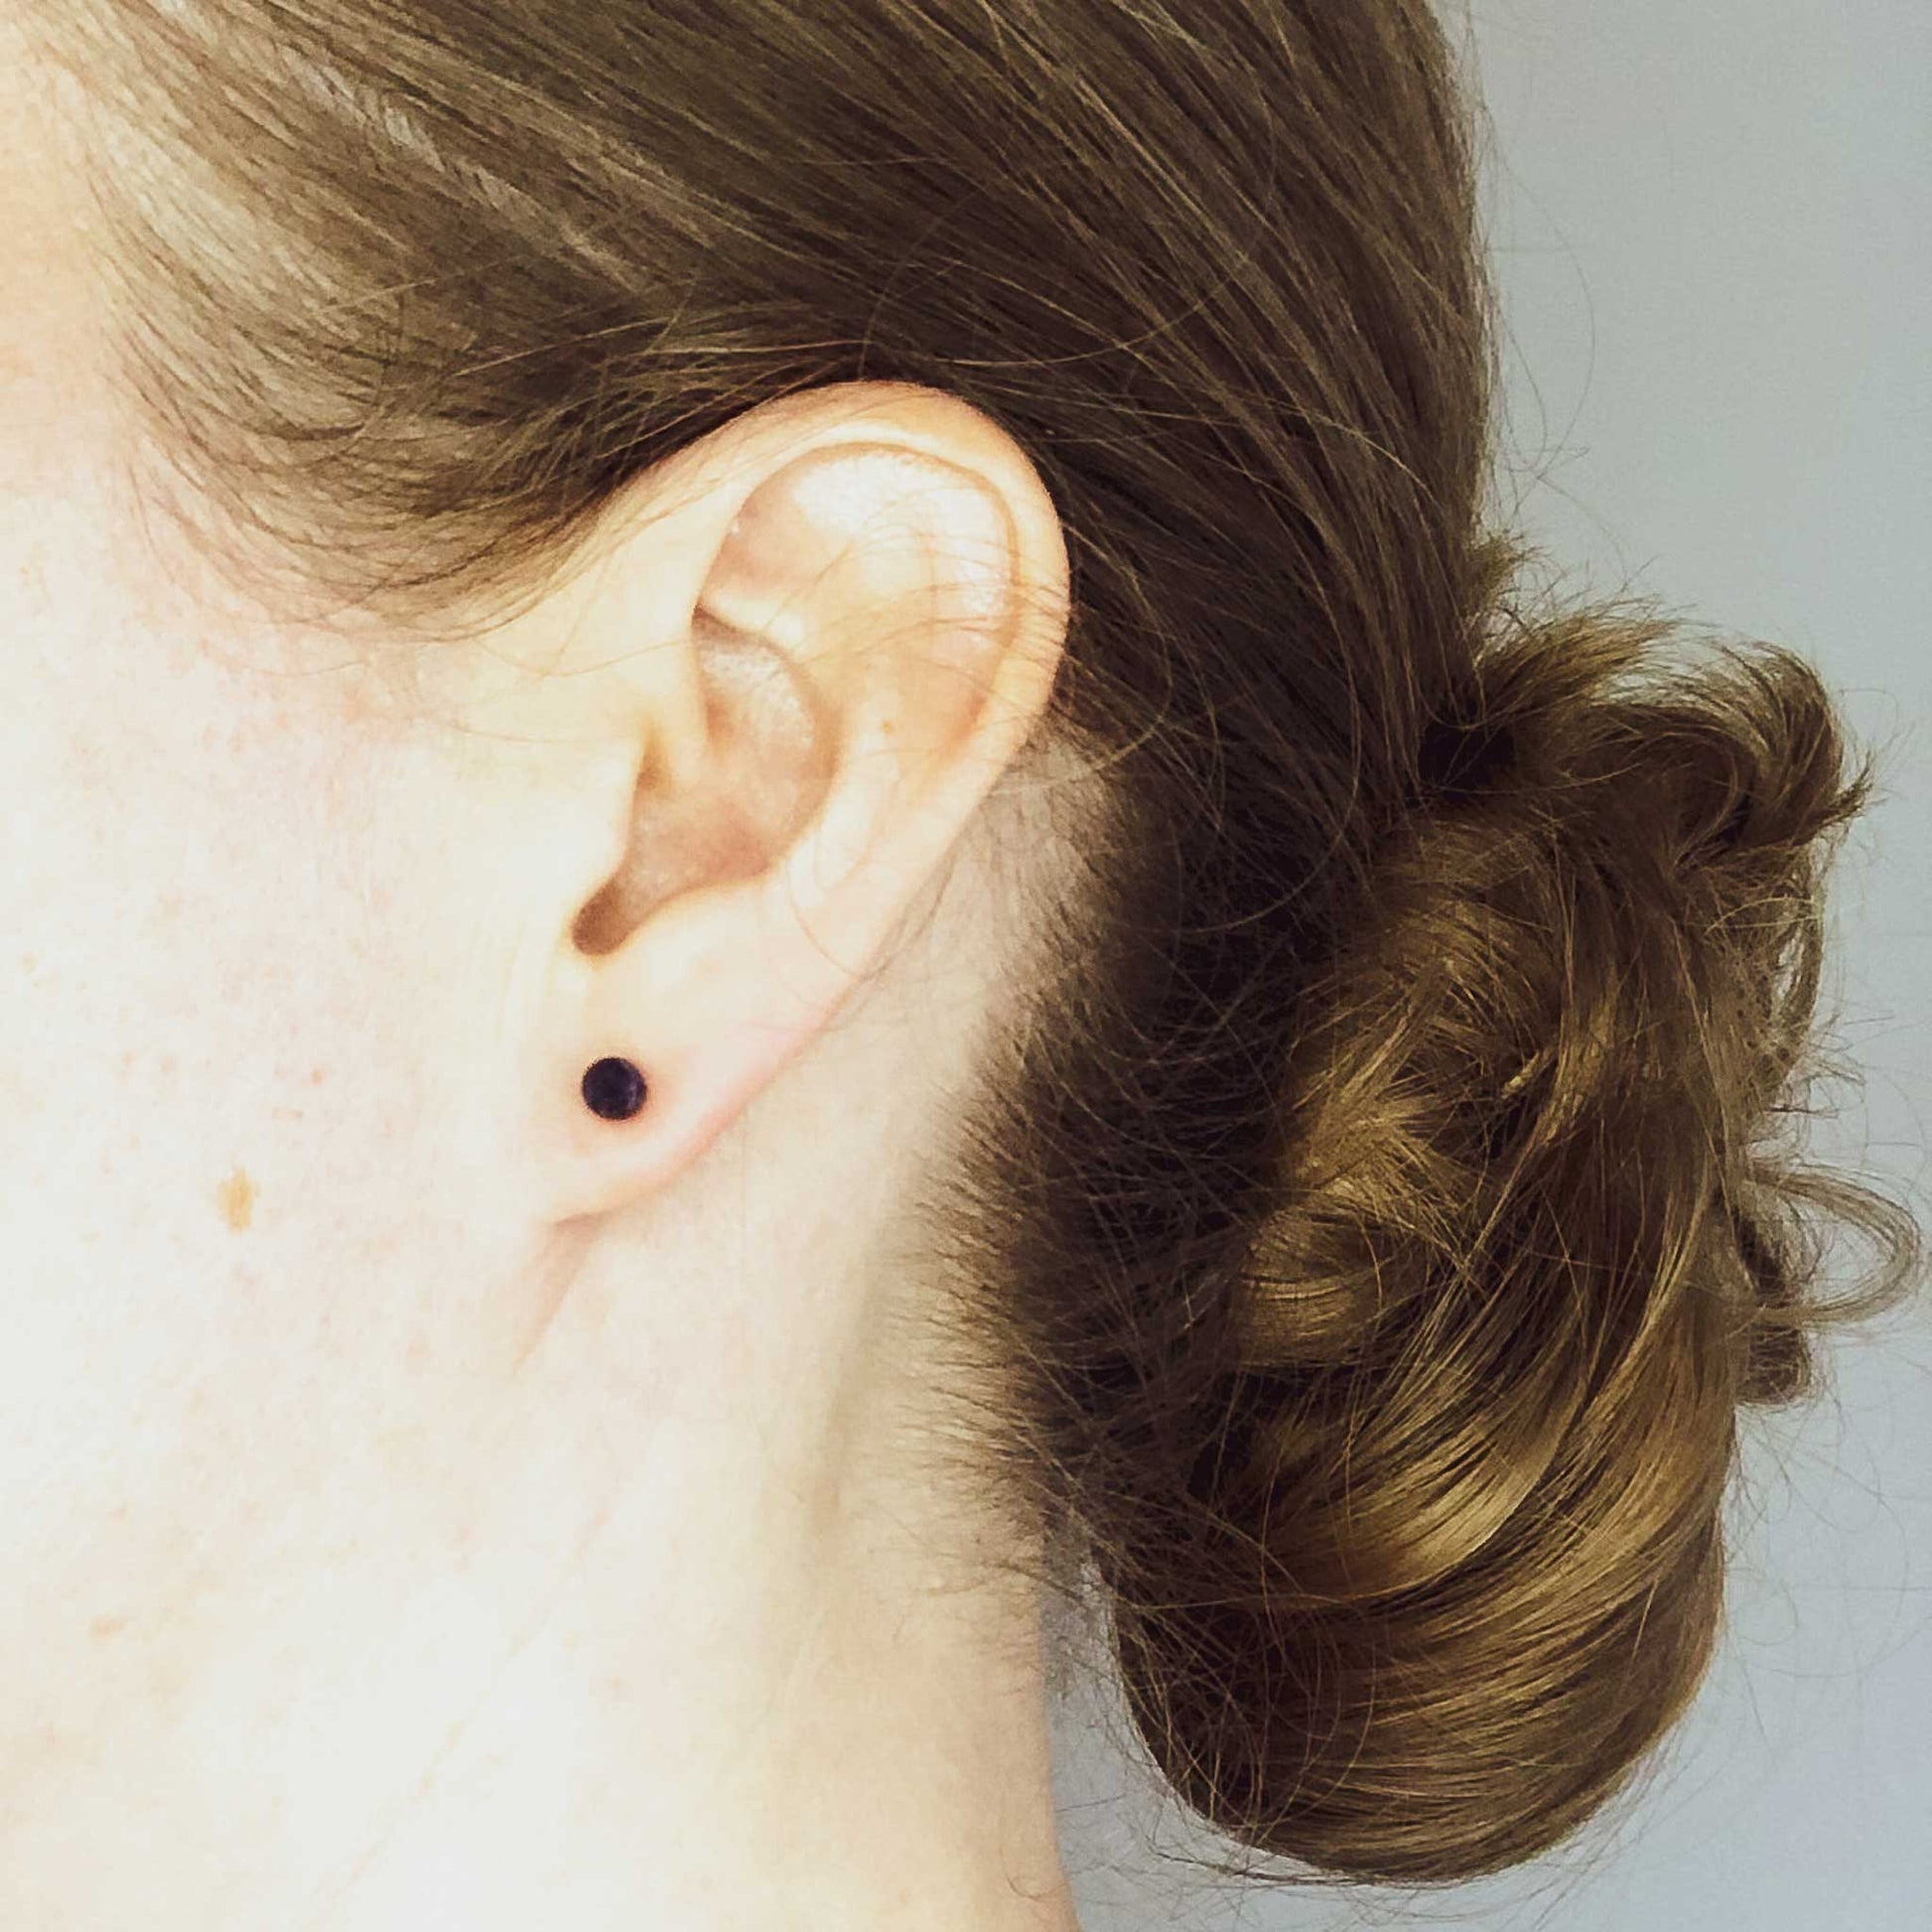 Woman wearing small blue stud earring in earlobe